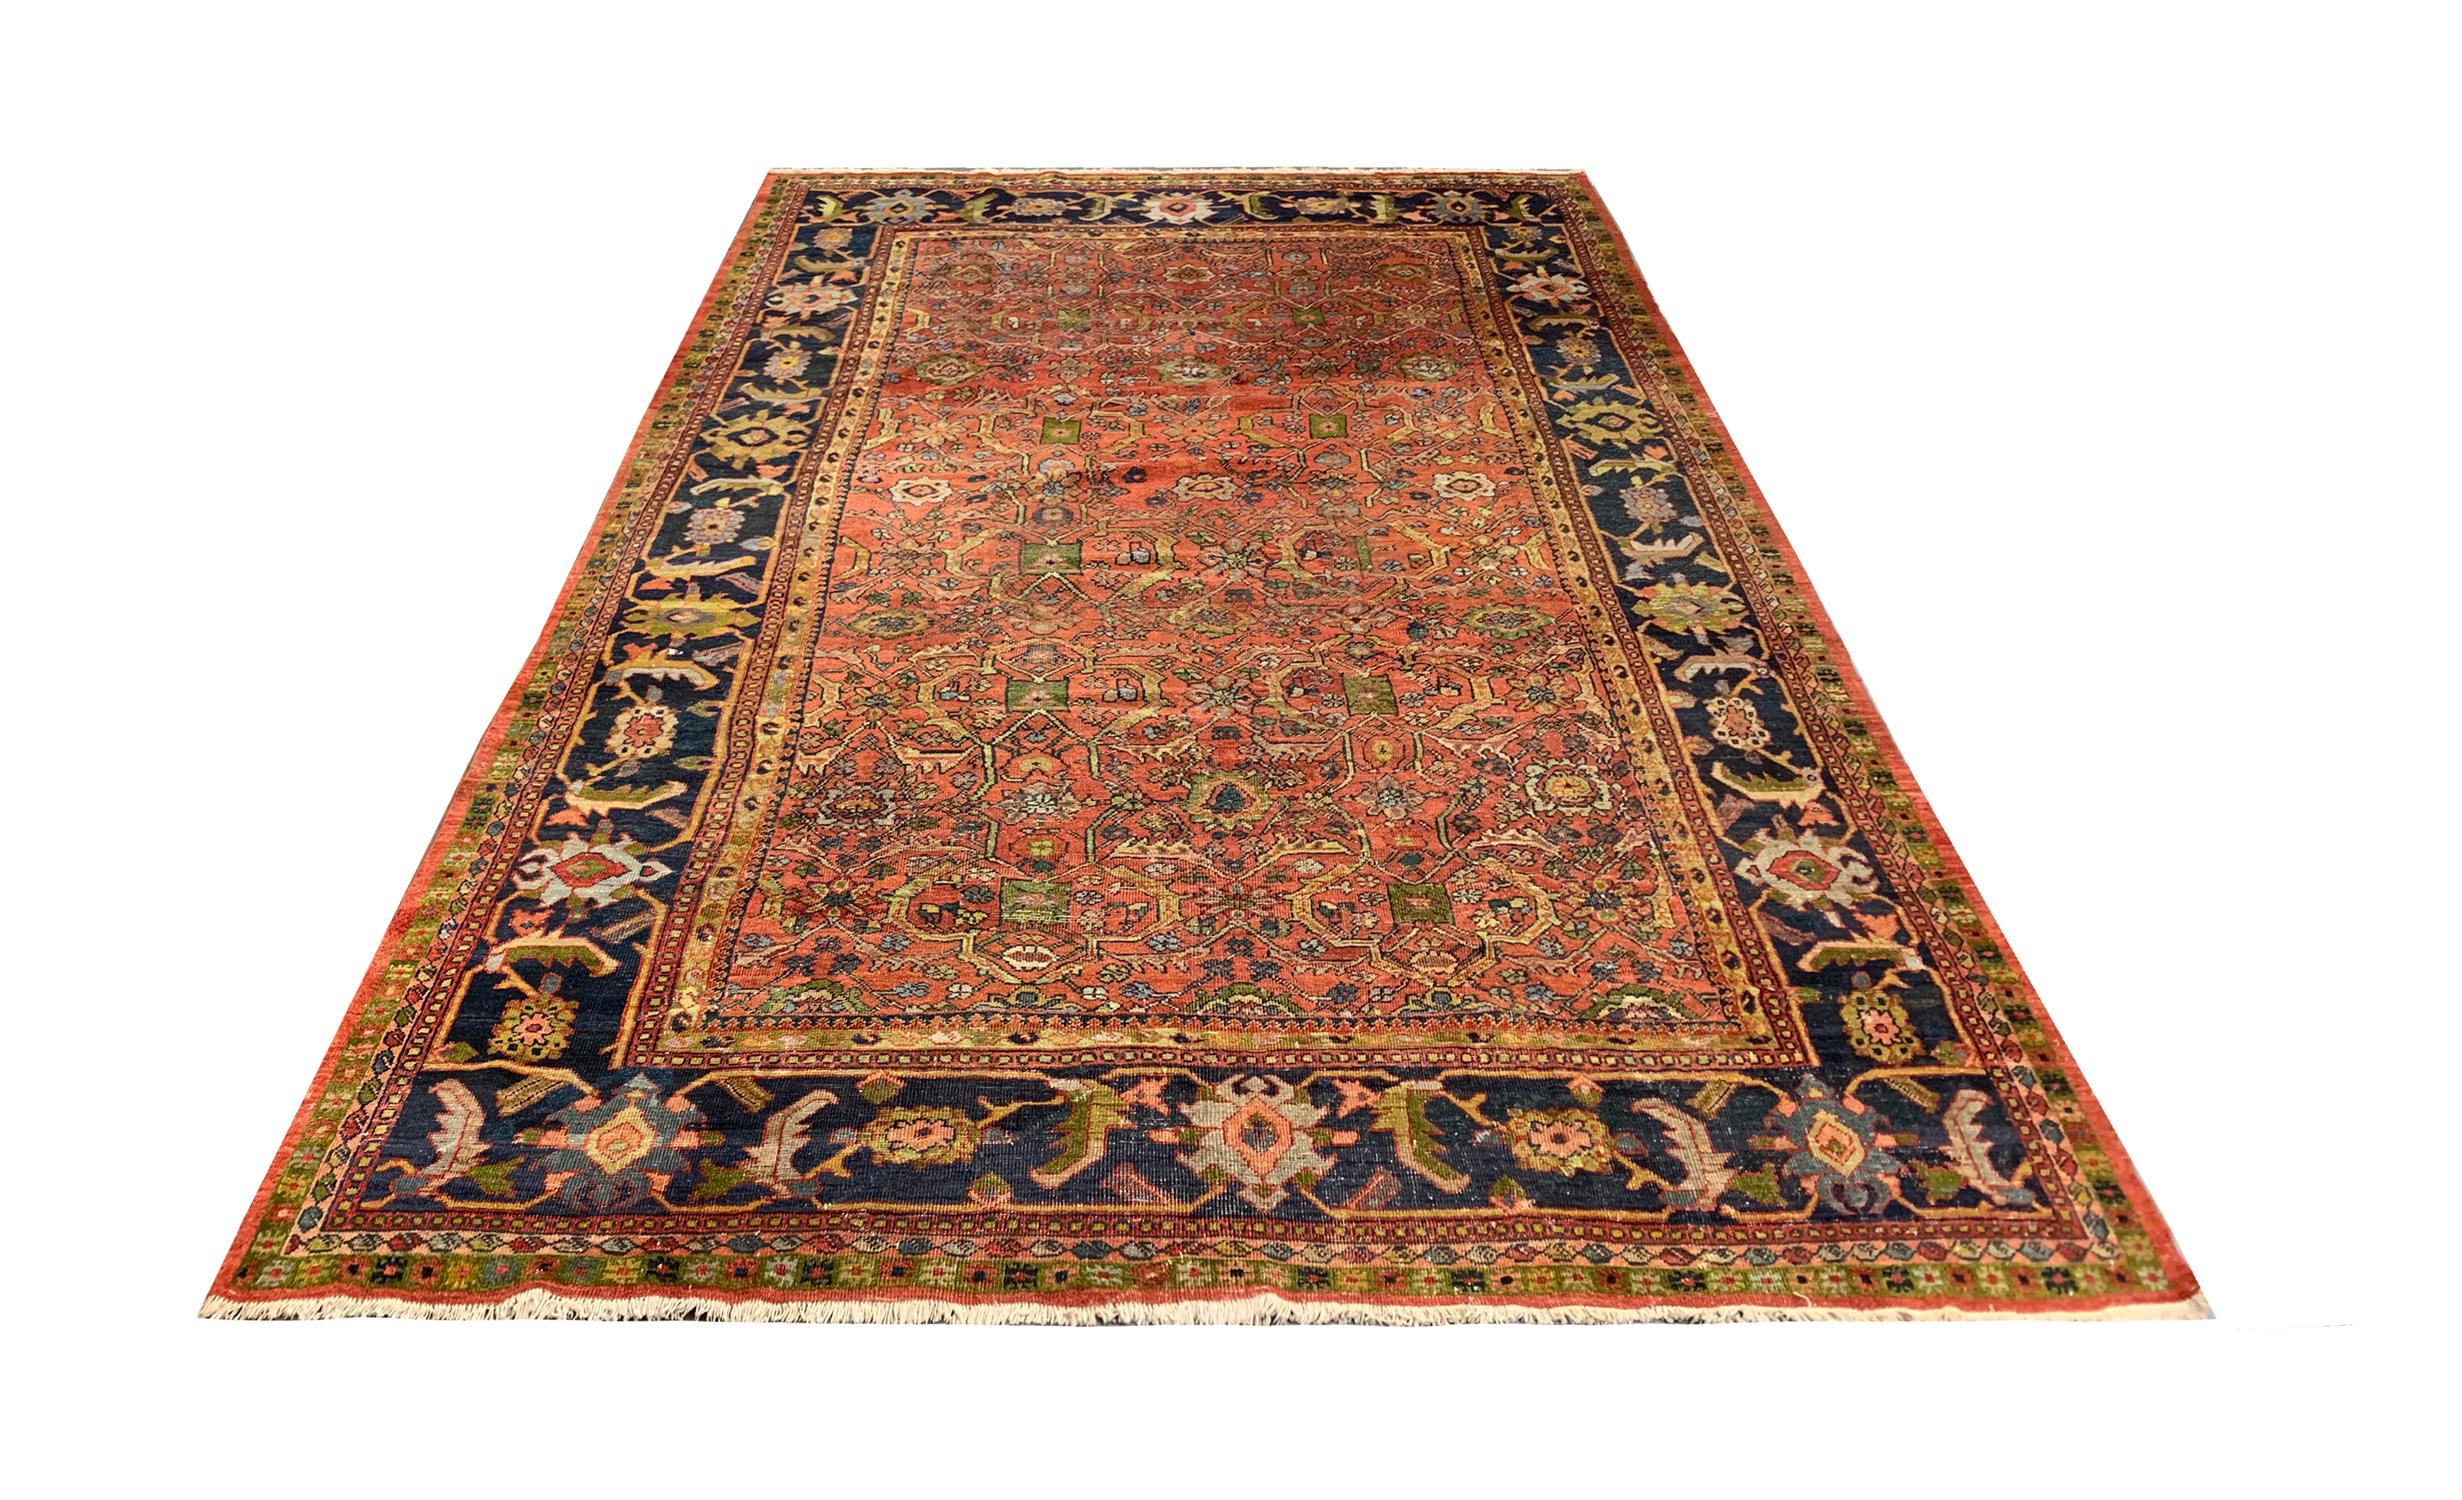 Handgefertigte kaukasische Teppiche gehören zu den begehrtesten unter den rustikalen Teppichen aufgrund ihrer dekorativen Ästhetik mit einzigartigen und räumlichen Variationen von All-Over-Designs und dekorativen Bordüren. Dieses Stück wurde von